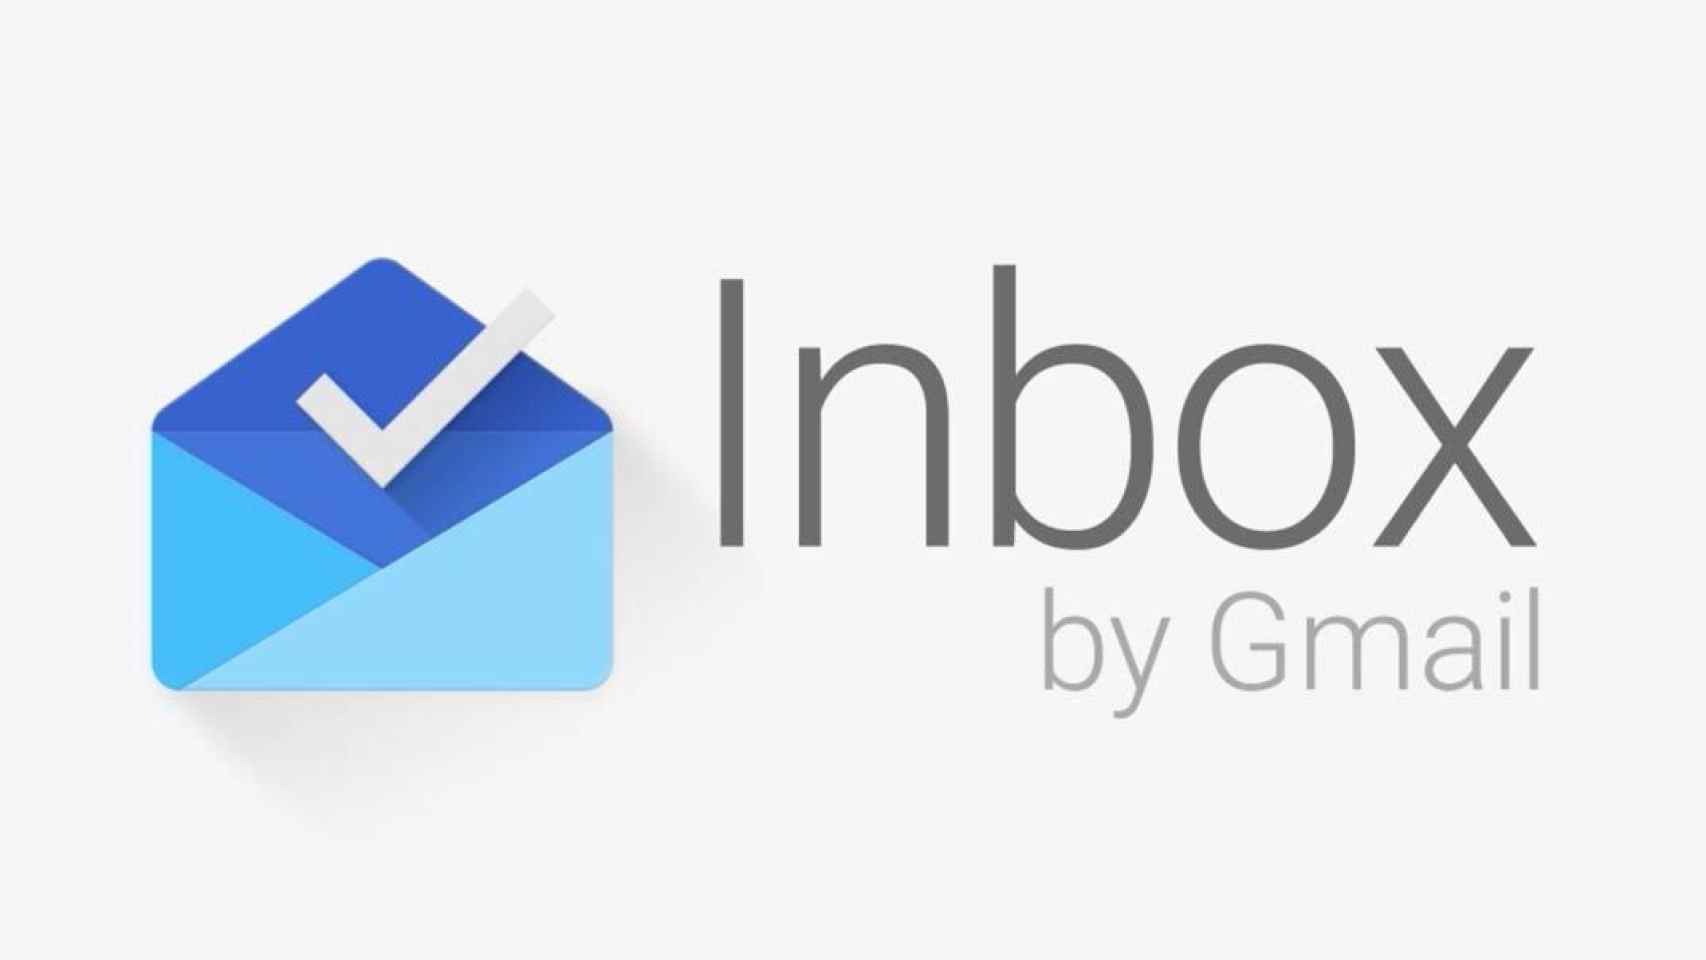 Google Inbox ya tiene día definitivo de muerte: el mismo que Google+